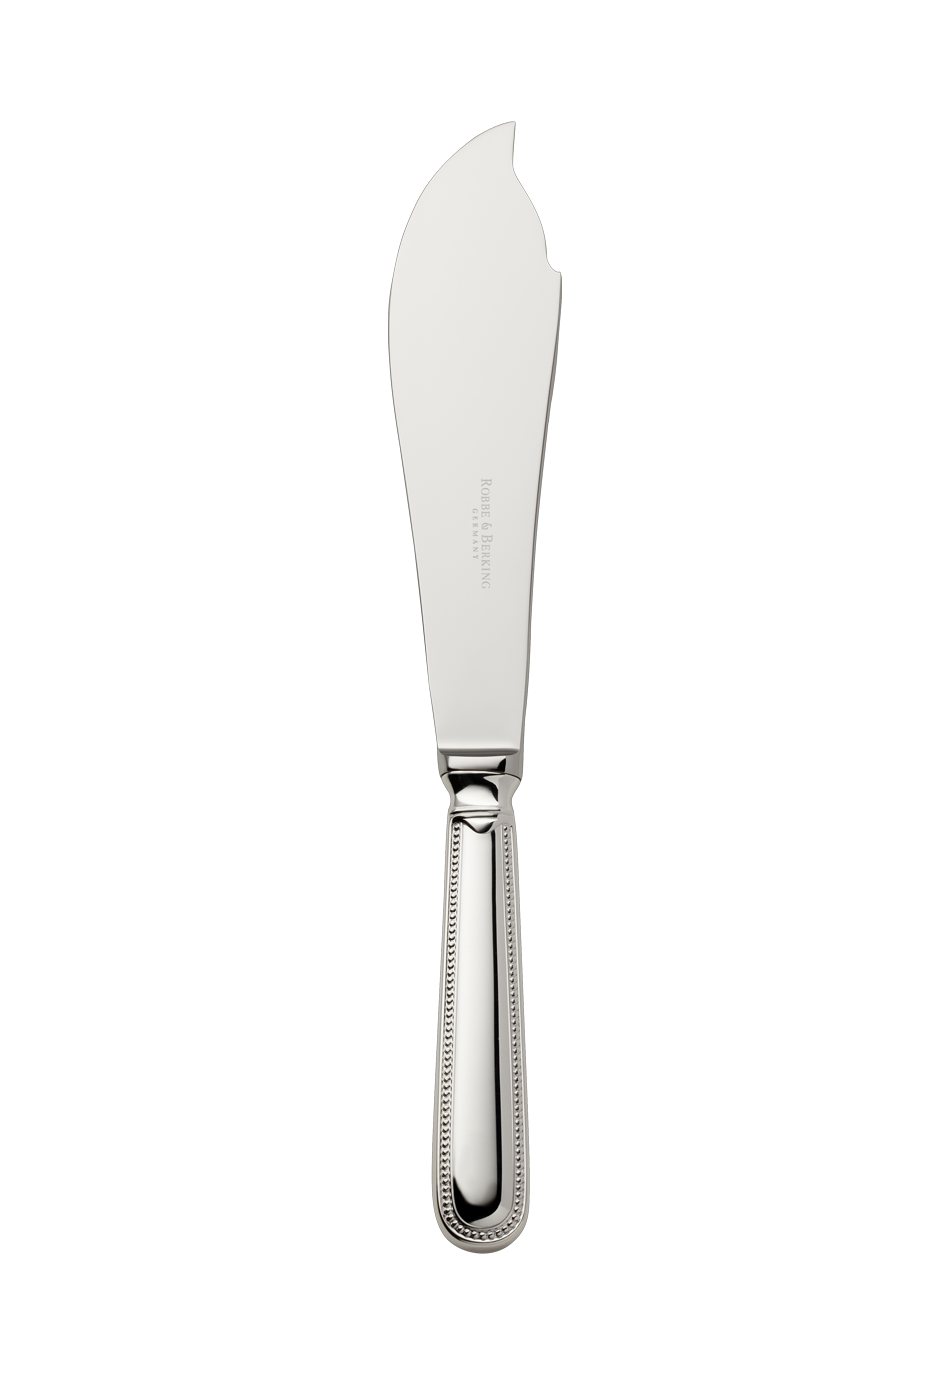 Französisch-Perl Tortenmesser (150g massiv versilbert)